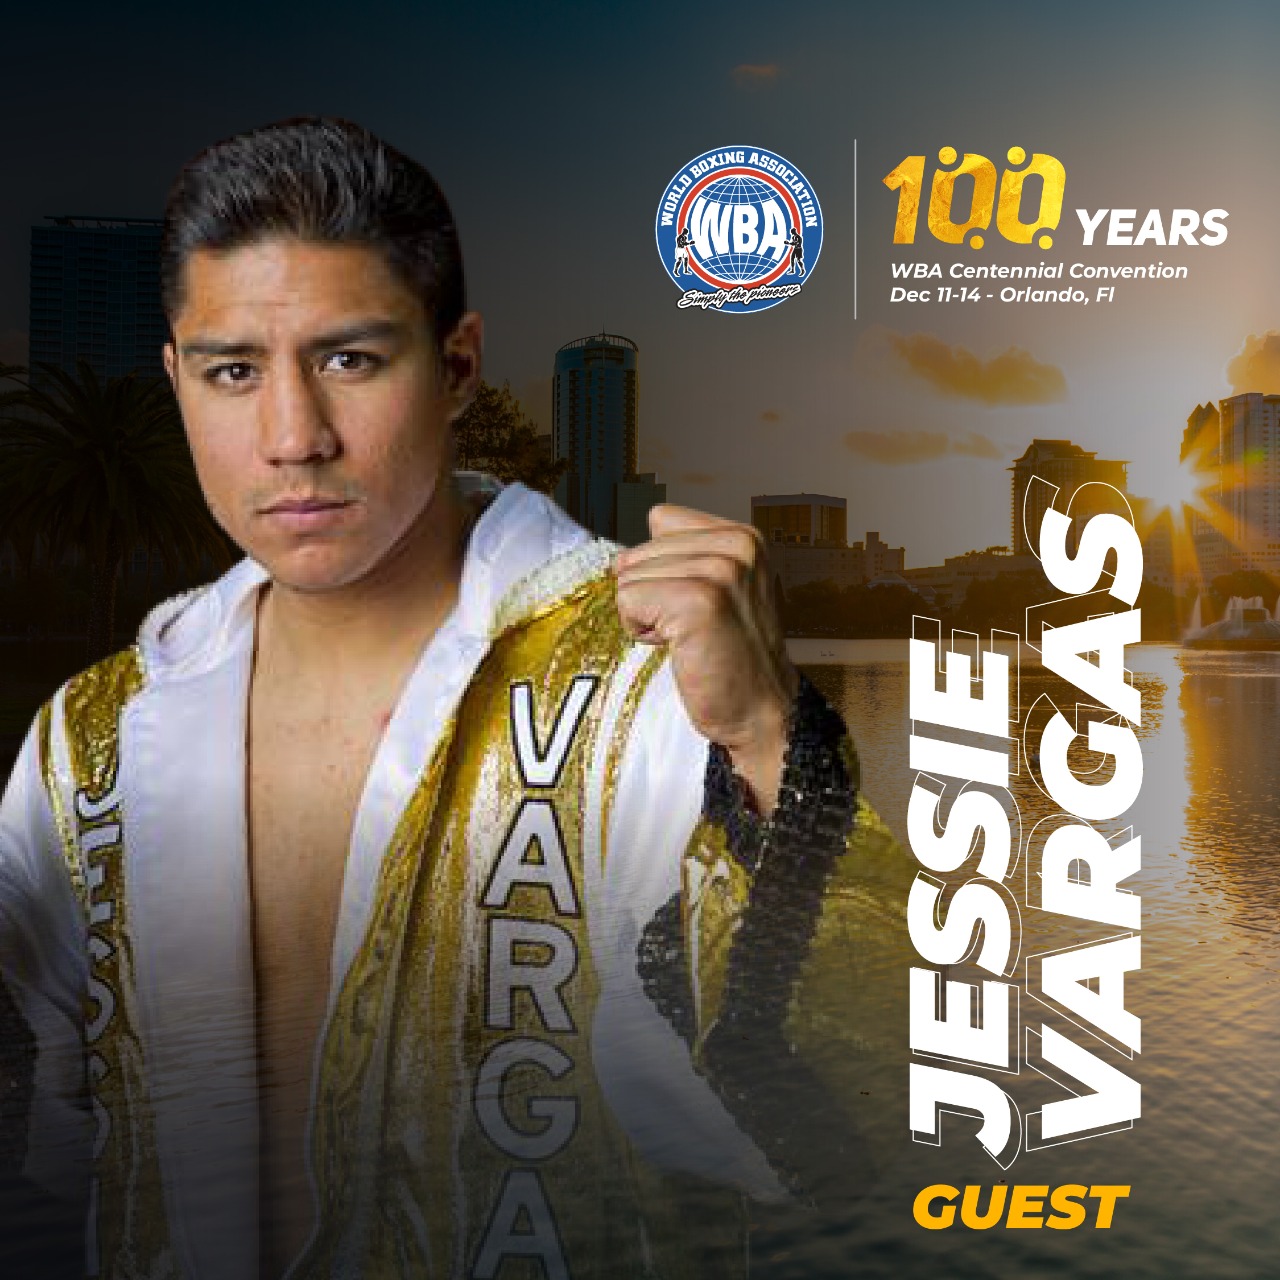 Jessie Vargas to attend WBA Centennial Convention